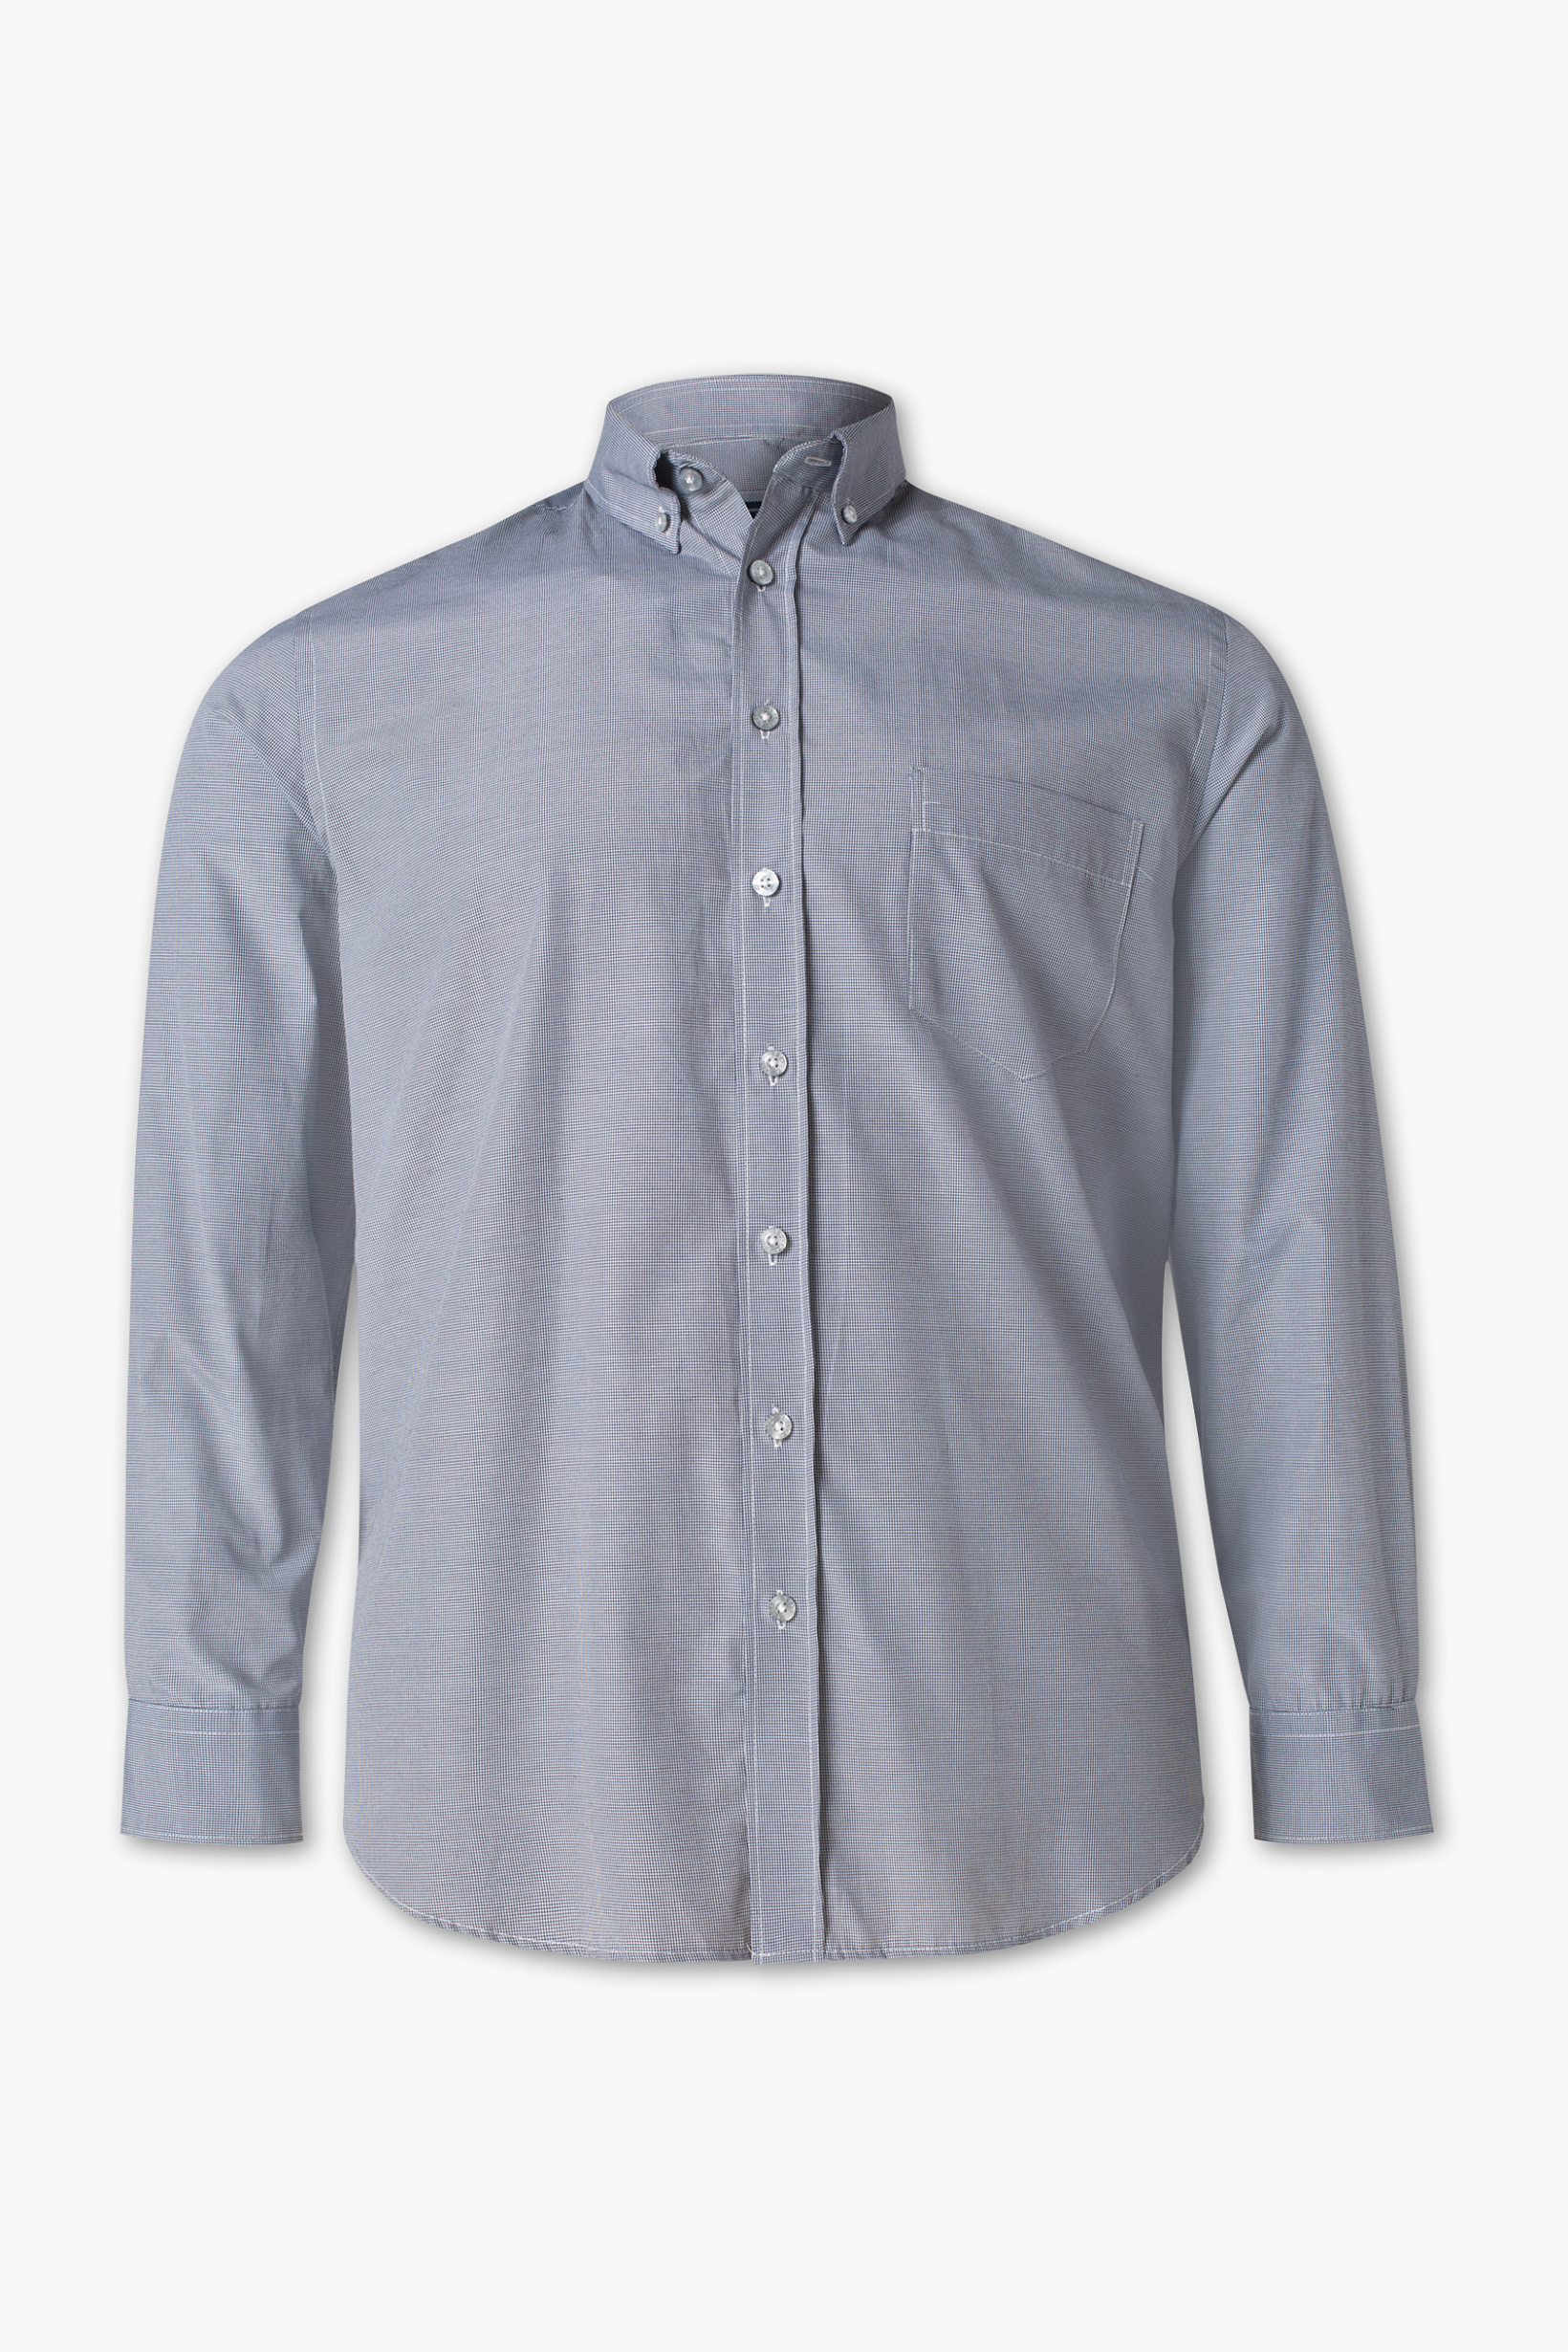 Canda Overhemd Regular Fit button down geruit